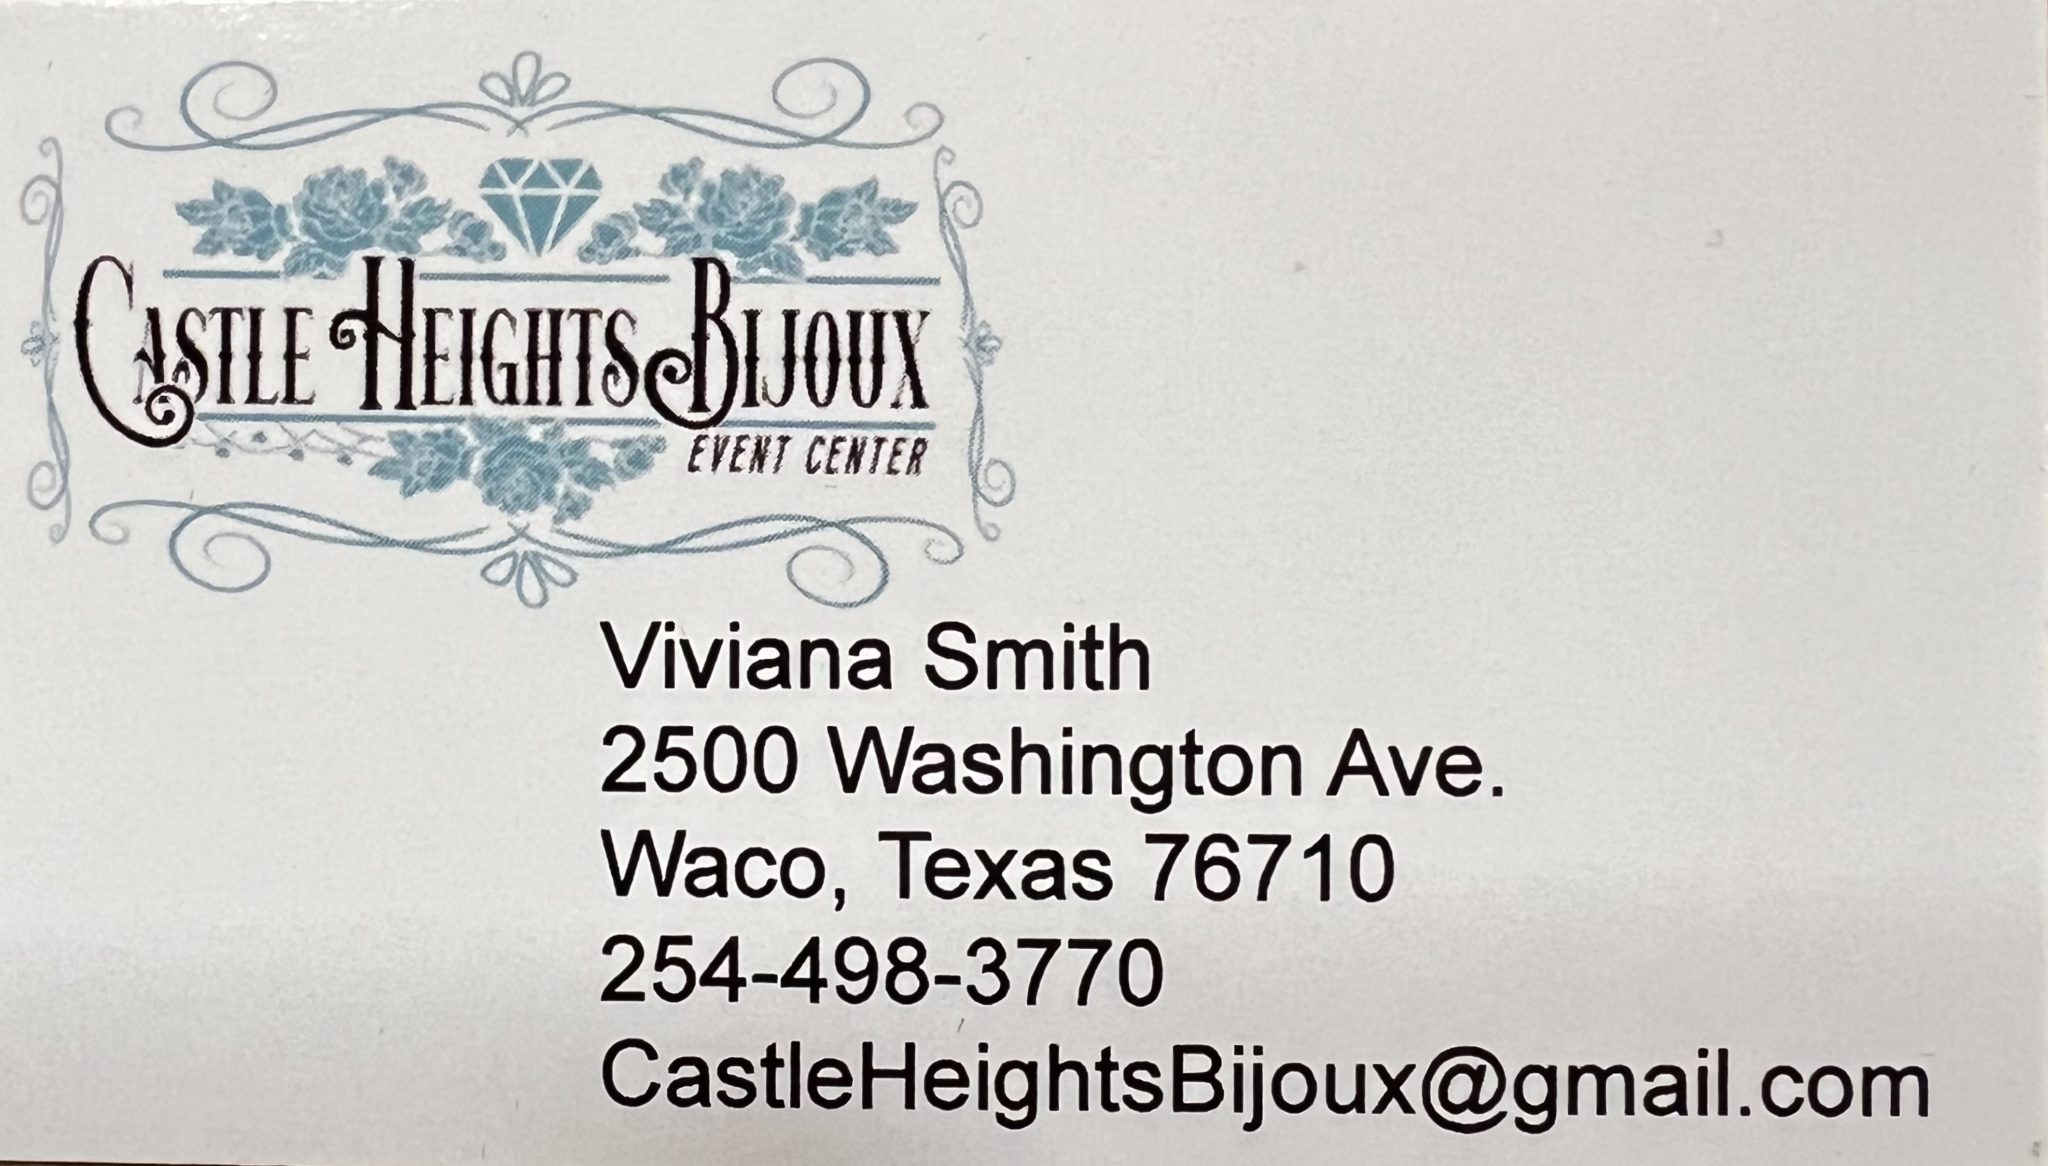 Castle Heights Bijoux Event Center - Waco, Texas